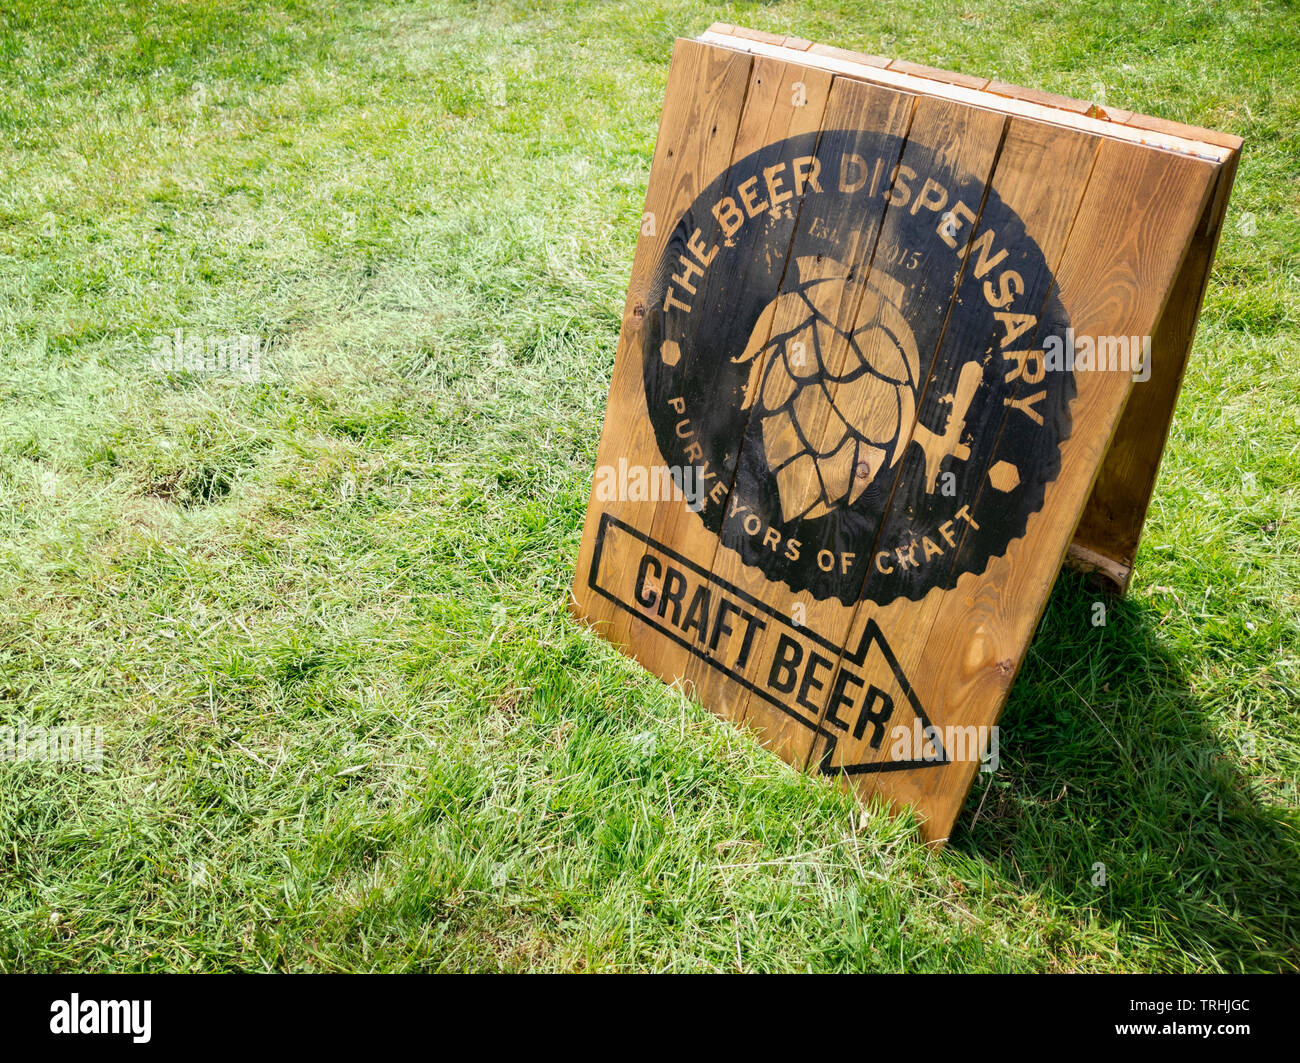 Handwerk Bier Schild/Beschilderung, das Bier Dispensary. Holz Handwerk Bier/Ale/IPA-Zeichen auf Gras Hintergrund, Edenbridge Essen & Trinken Festival, Kent, Großbritannien Stockfoto